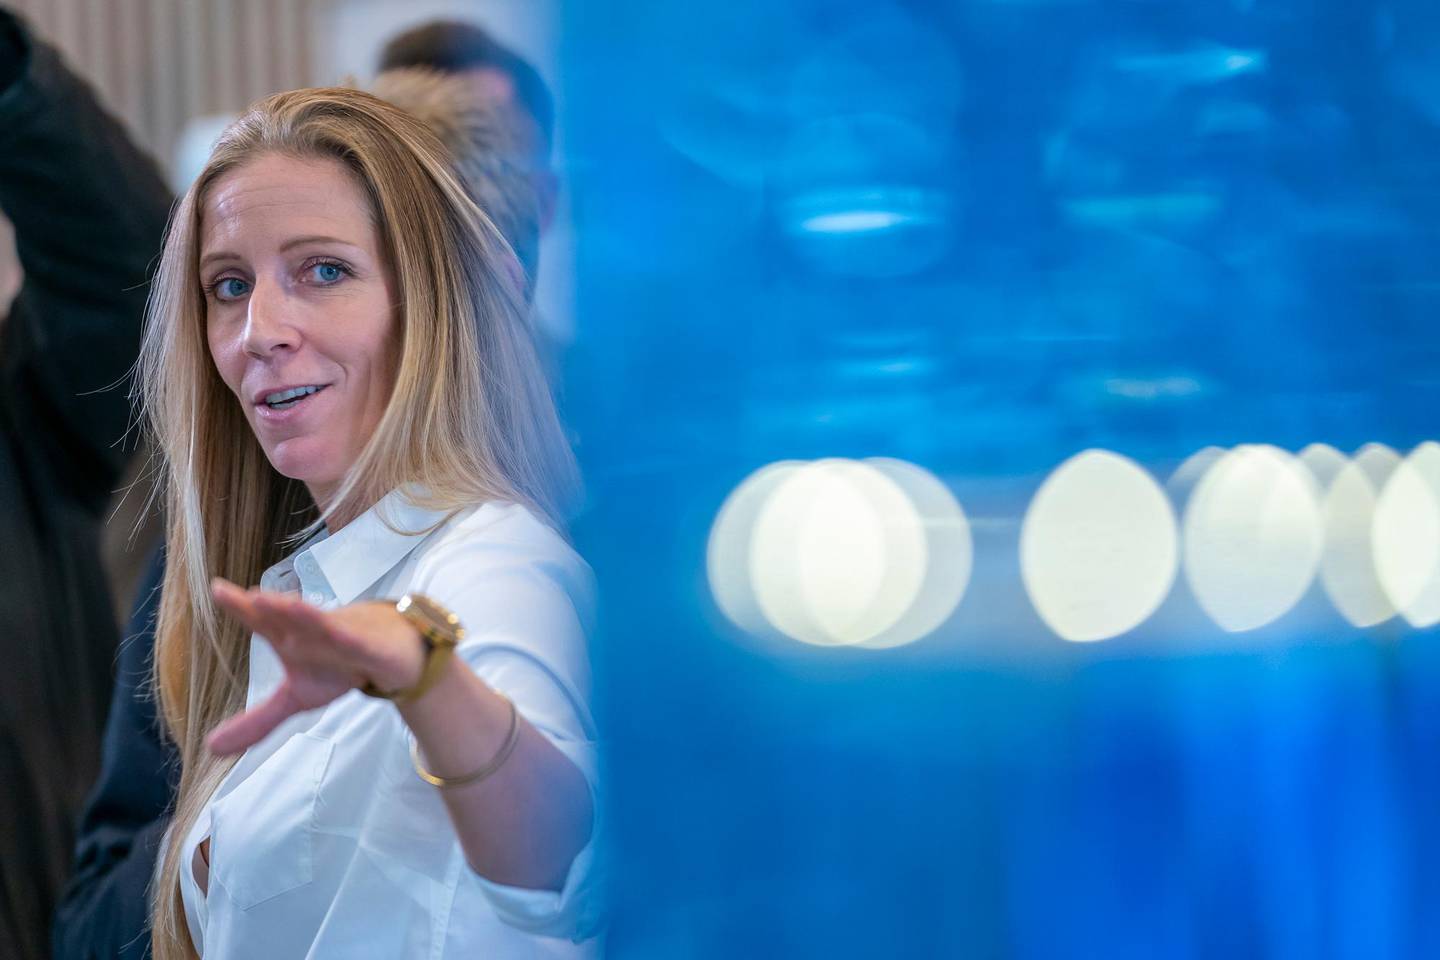 Fornebu  20181009.
Administrerende direktør Nina Jensen i REV Ocean under lanseringen av World Ocean Headquarters (WOH), et verdensledende havsenter, på Fornebu. 
Foto: Heiko Junge / NTB scanpix